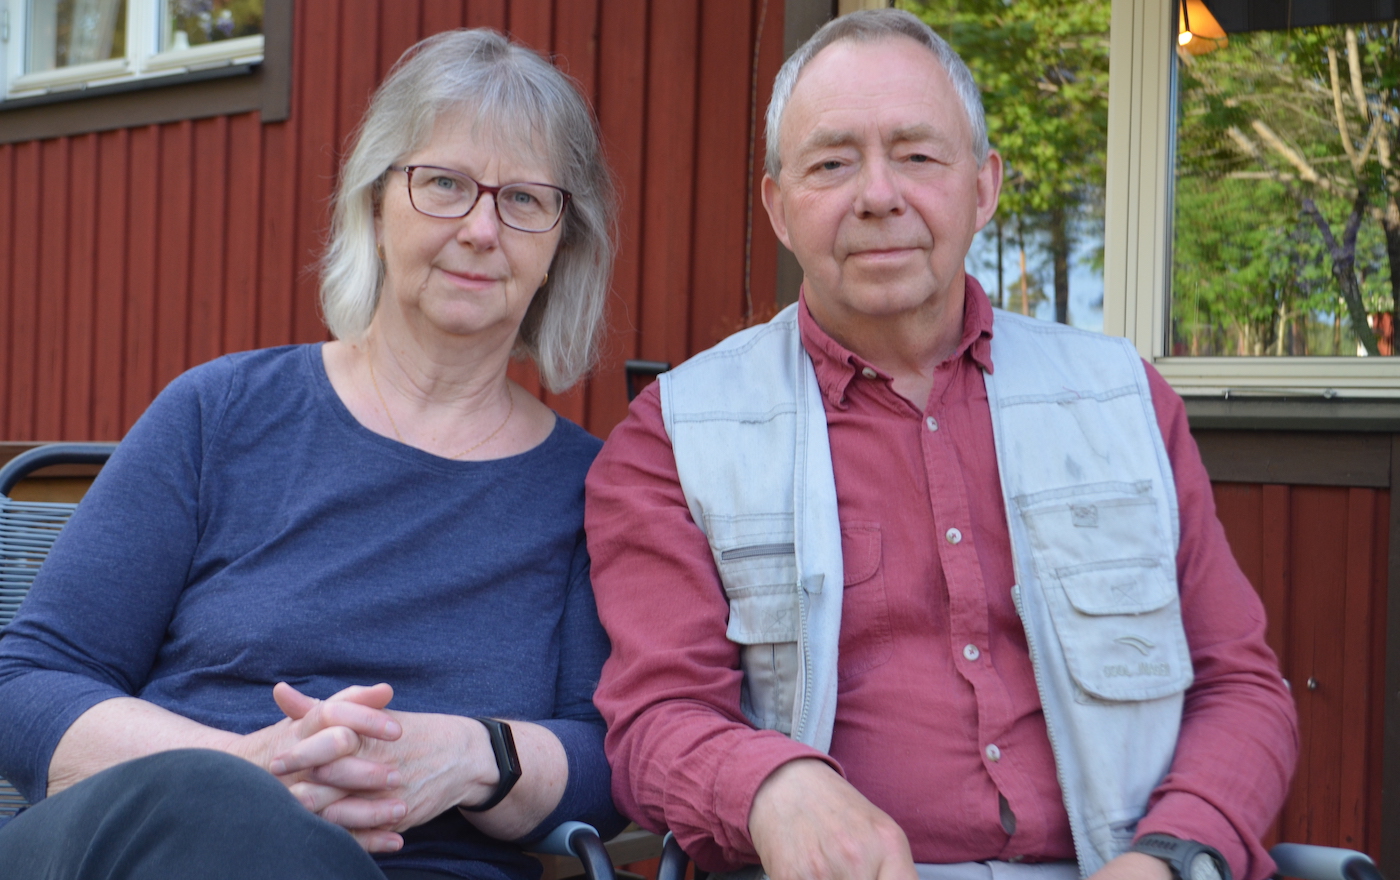 Extrainsatt: Spelmanssafari i Orsa med Olle och Birgitta Moraeus